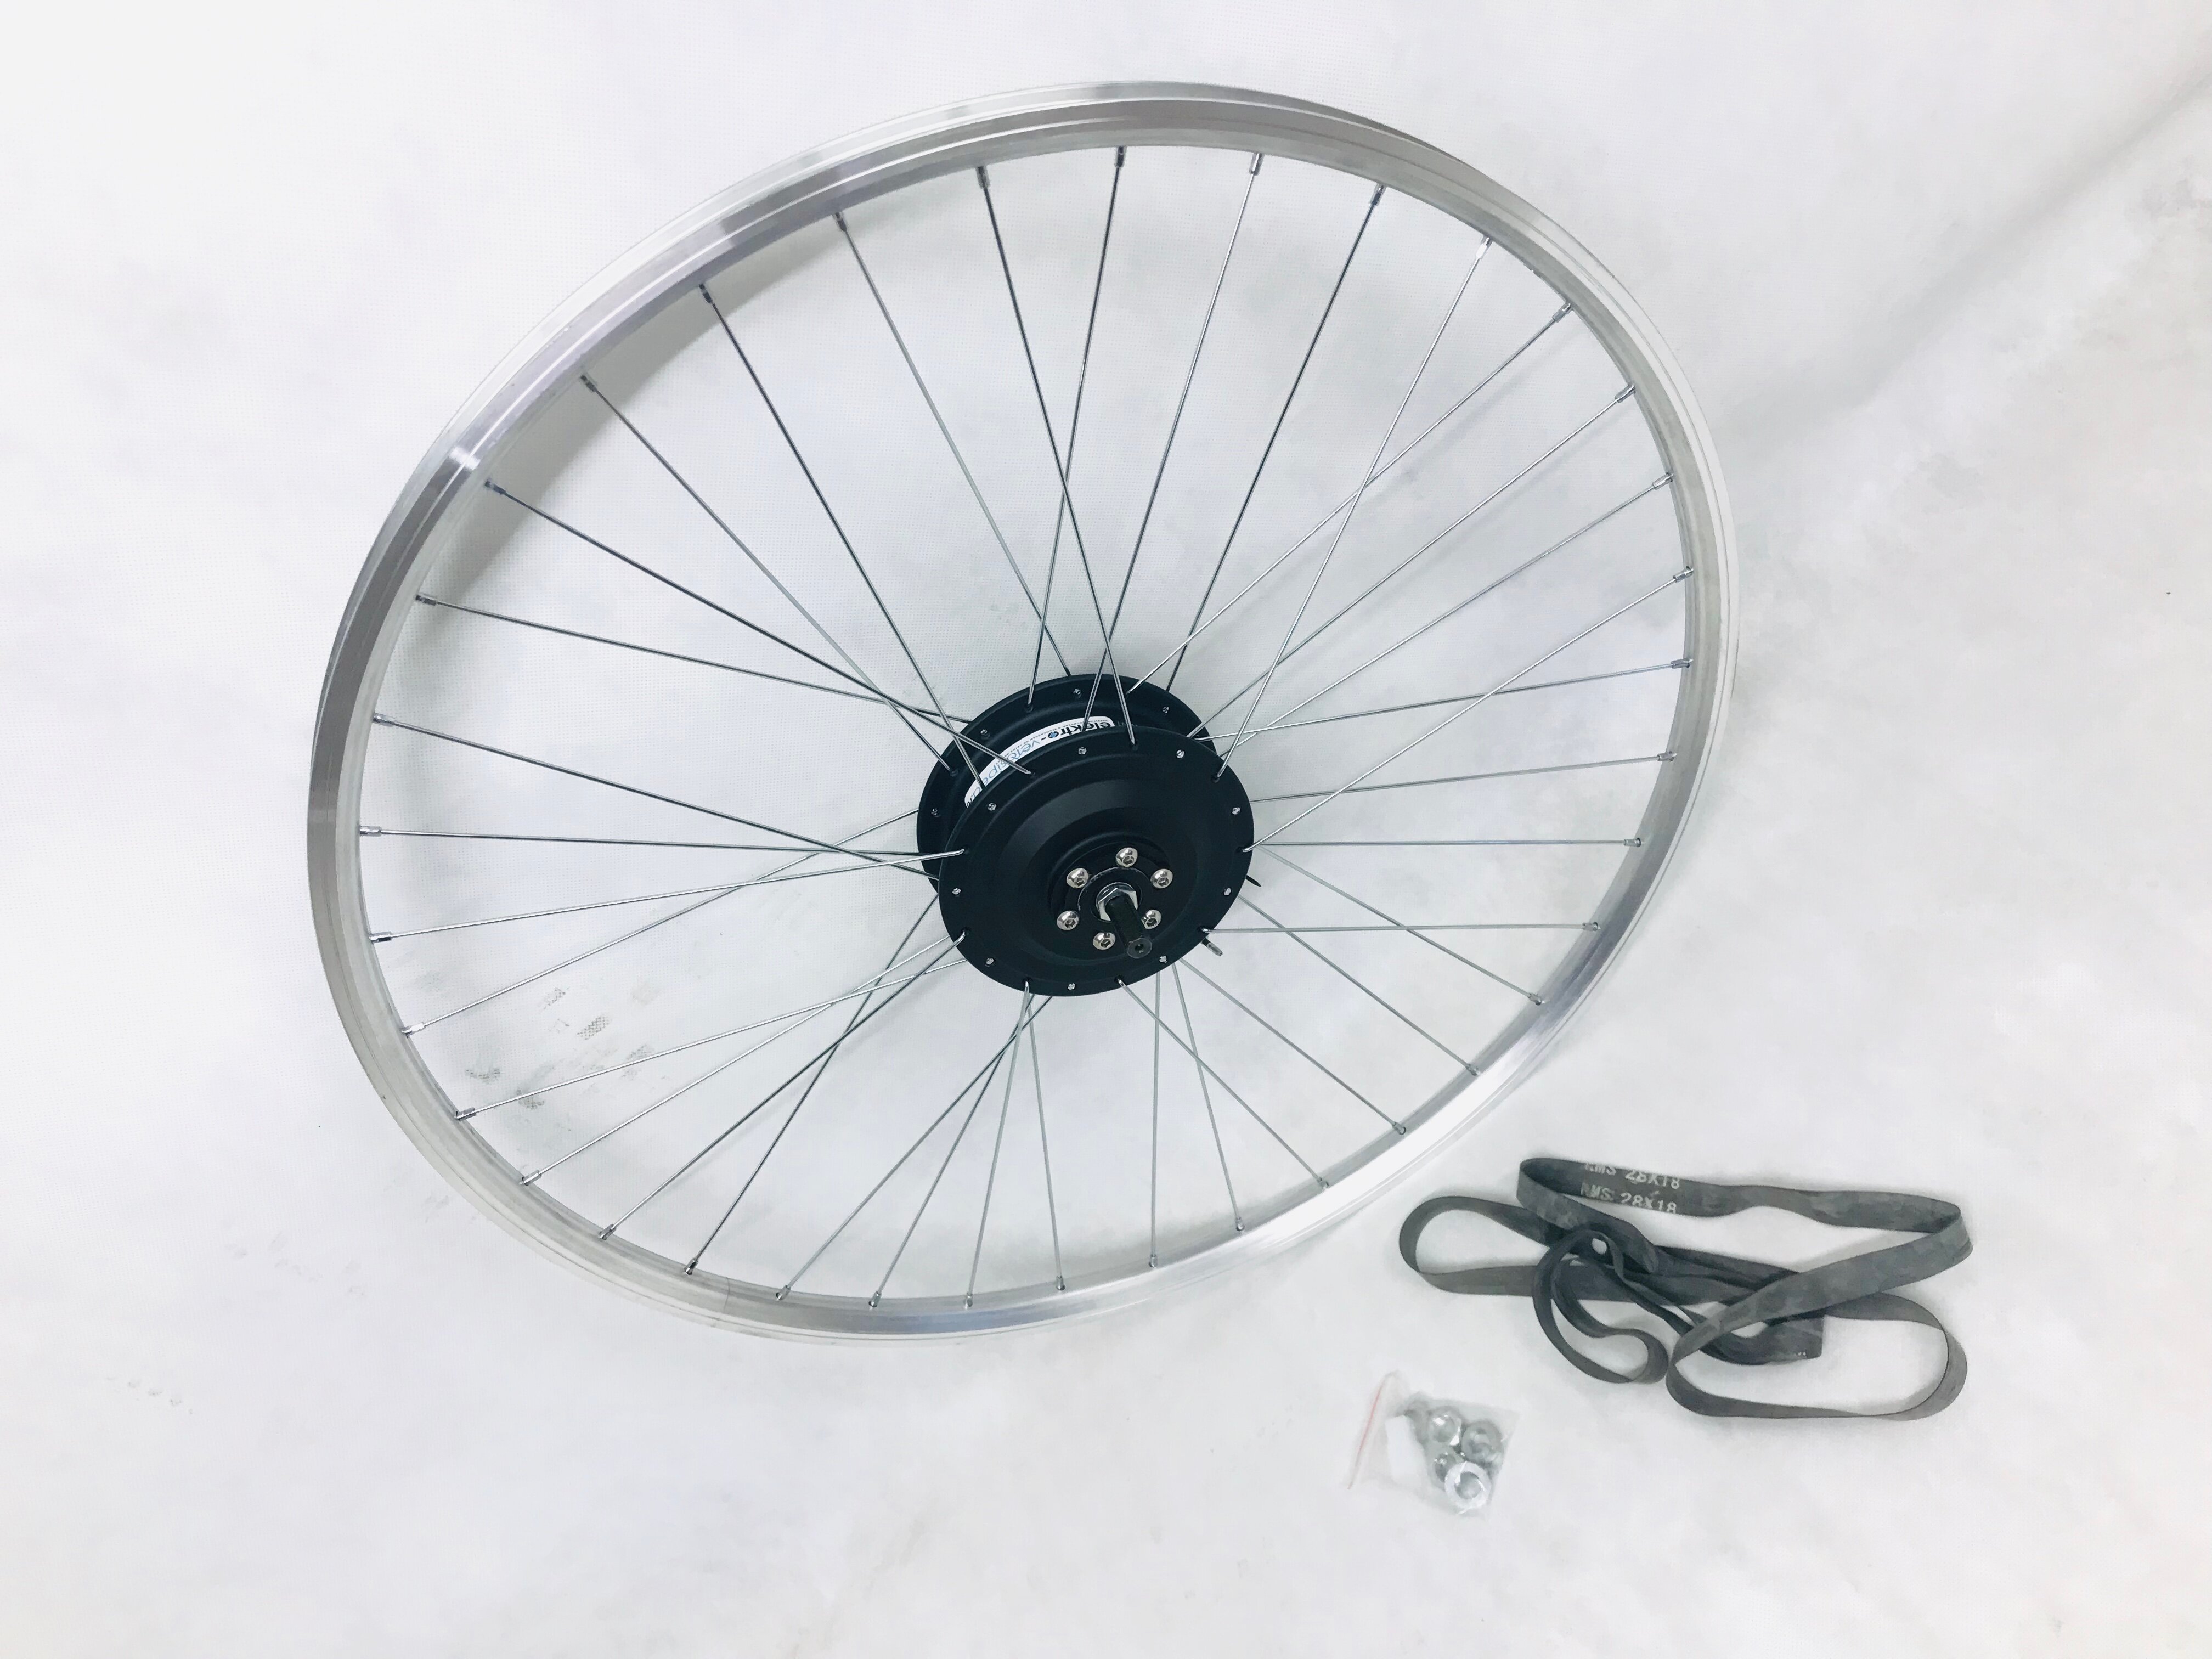 Редукторное мотор колесо в сборе на 36-48v/350w Ватт для велосипеда 28-29" дюймов передний привод